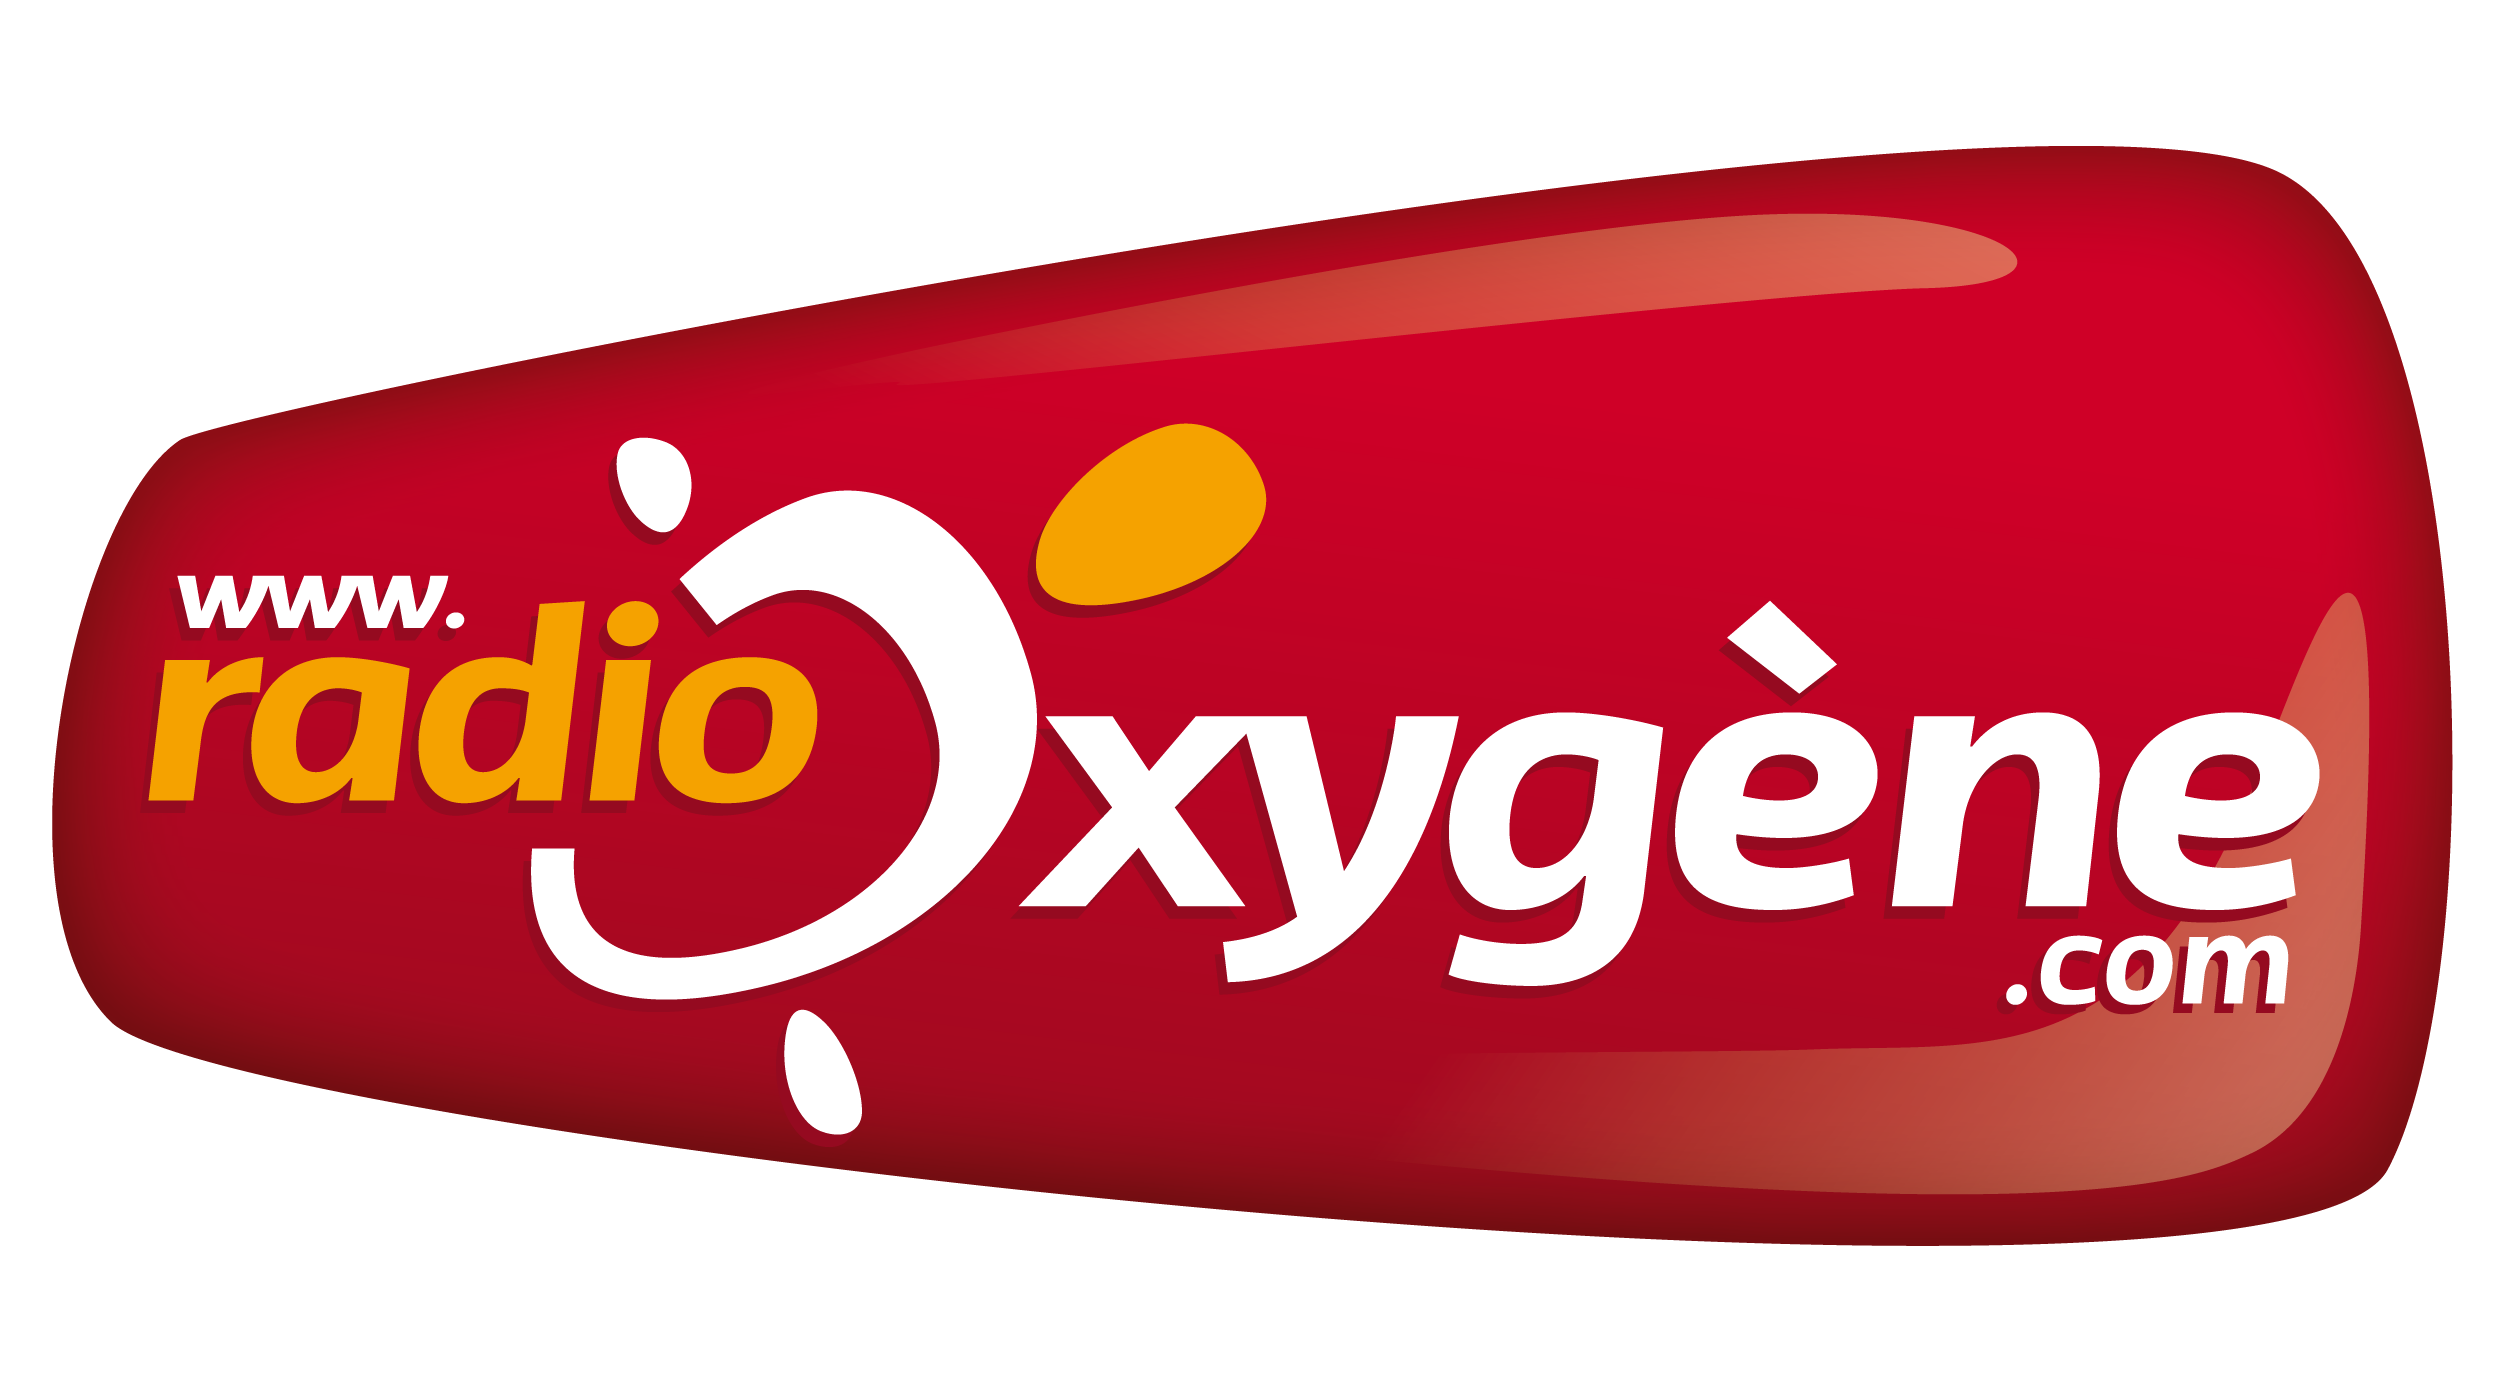 Radio Oxygène